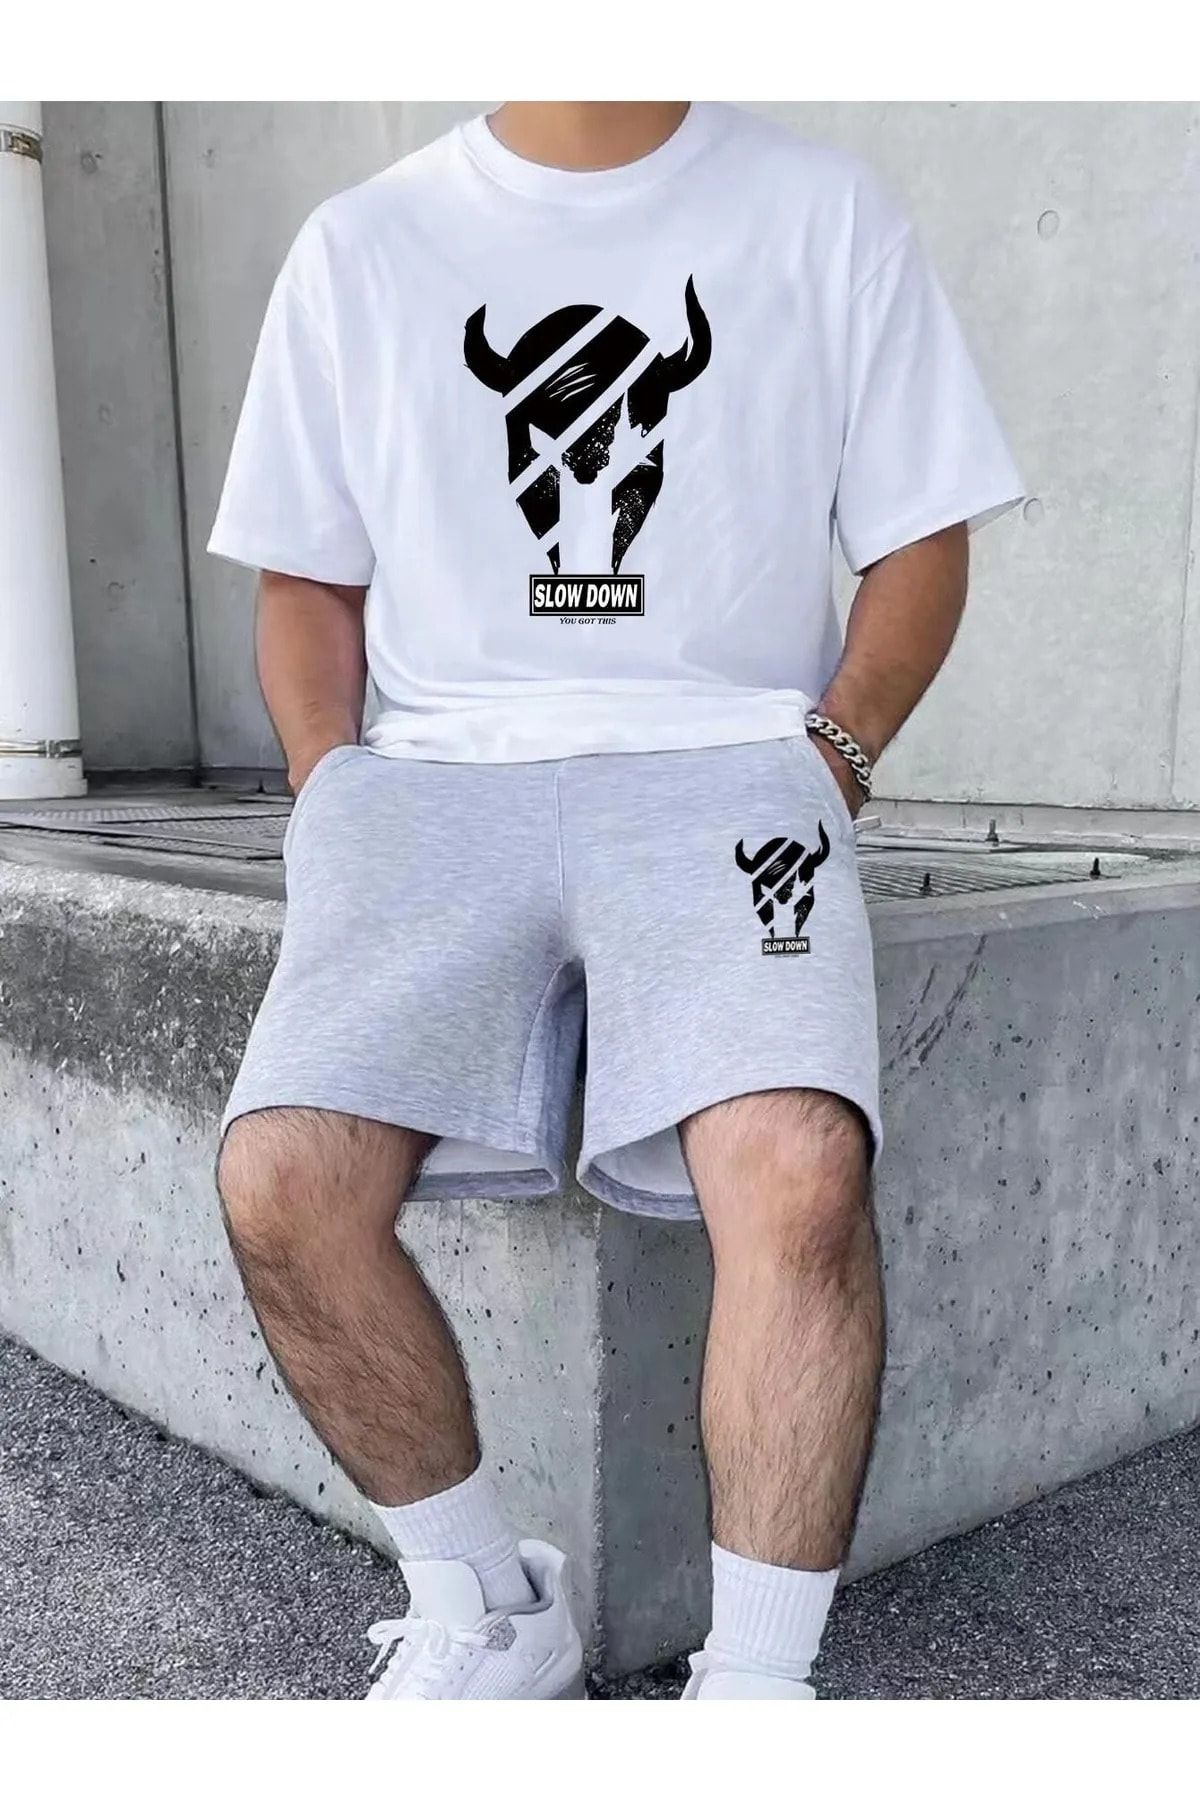 MODARİCH Slow Down Beyaz T-shirt Gri Şort - Şortlu Tişört Alt Üst Takım Baskılı Oversize Bisiklet Yaka